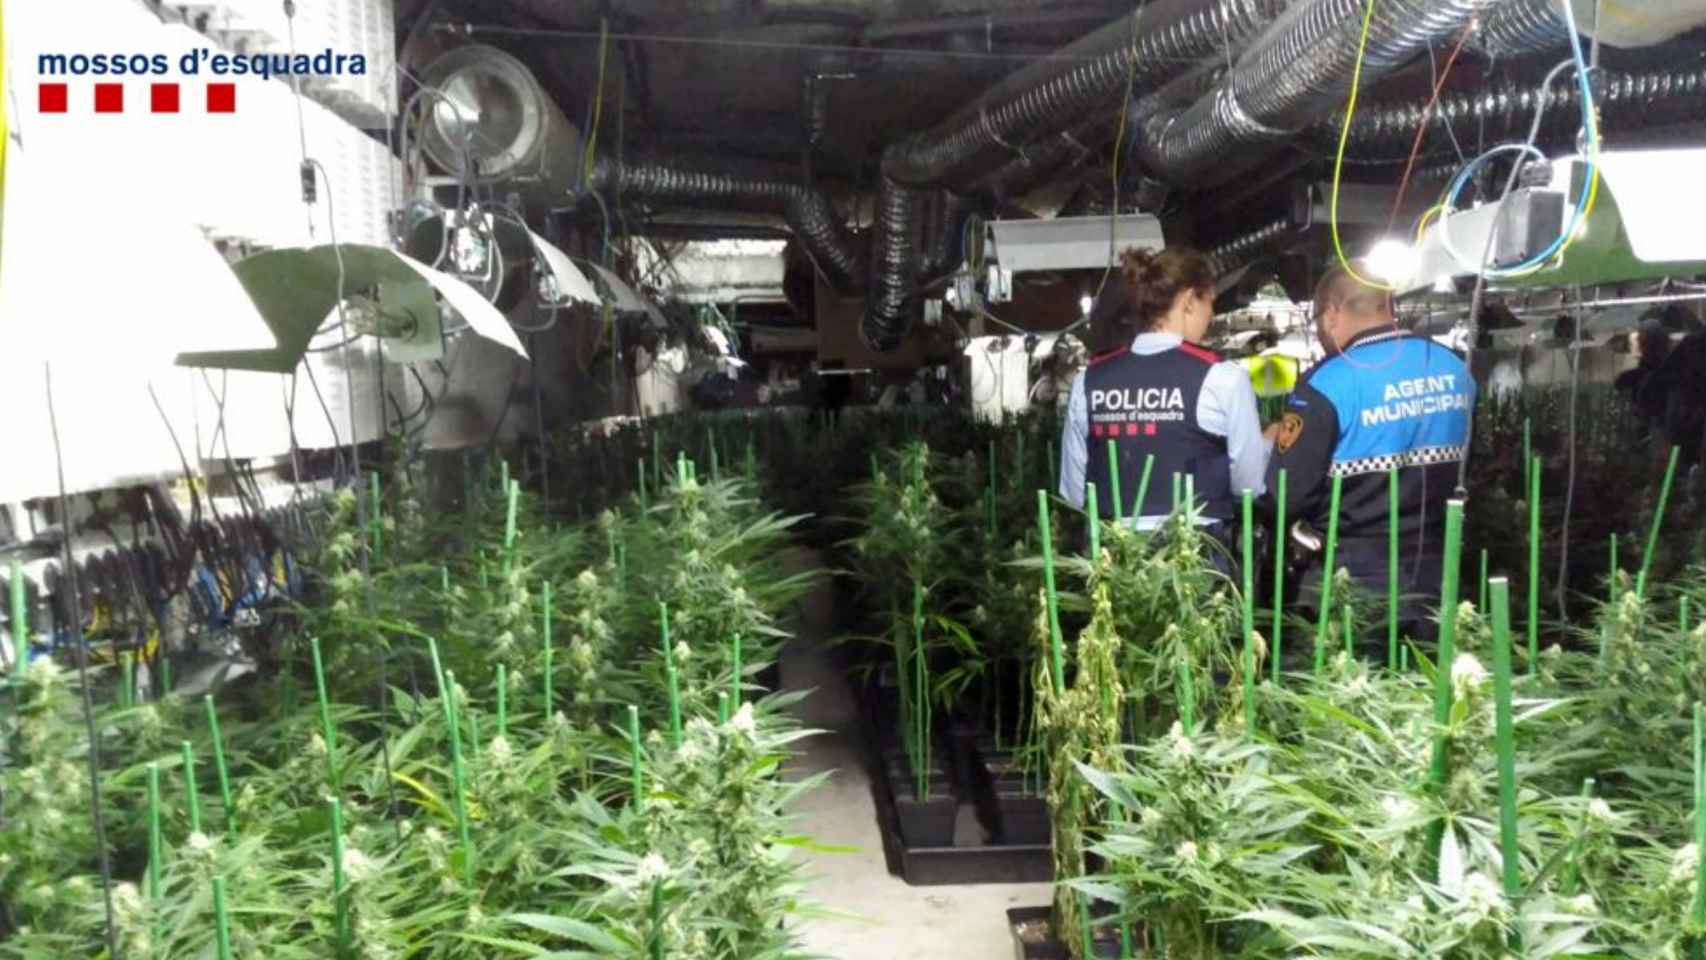 Operación policial en una plantación de marihuana / MOSSOS D'ESQUADRA